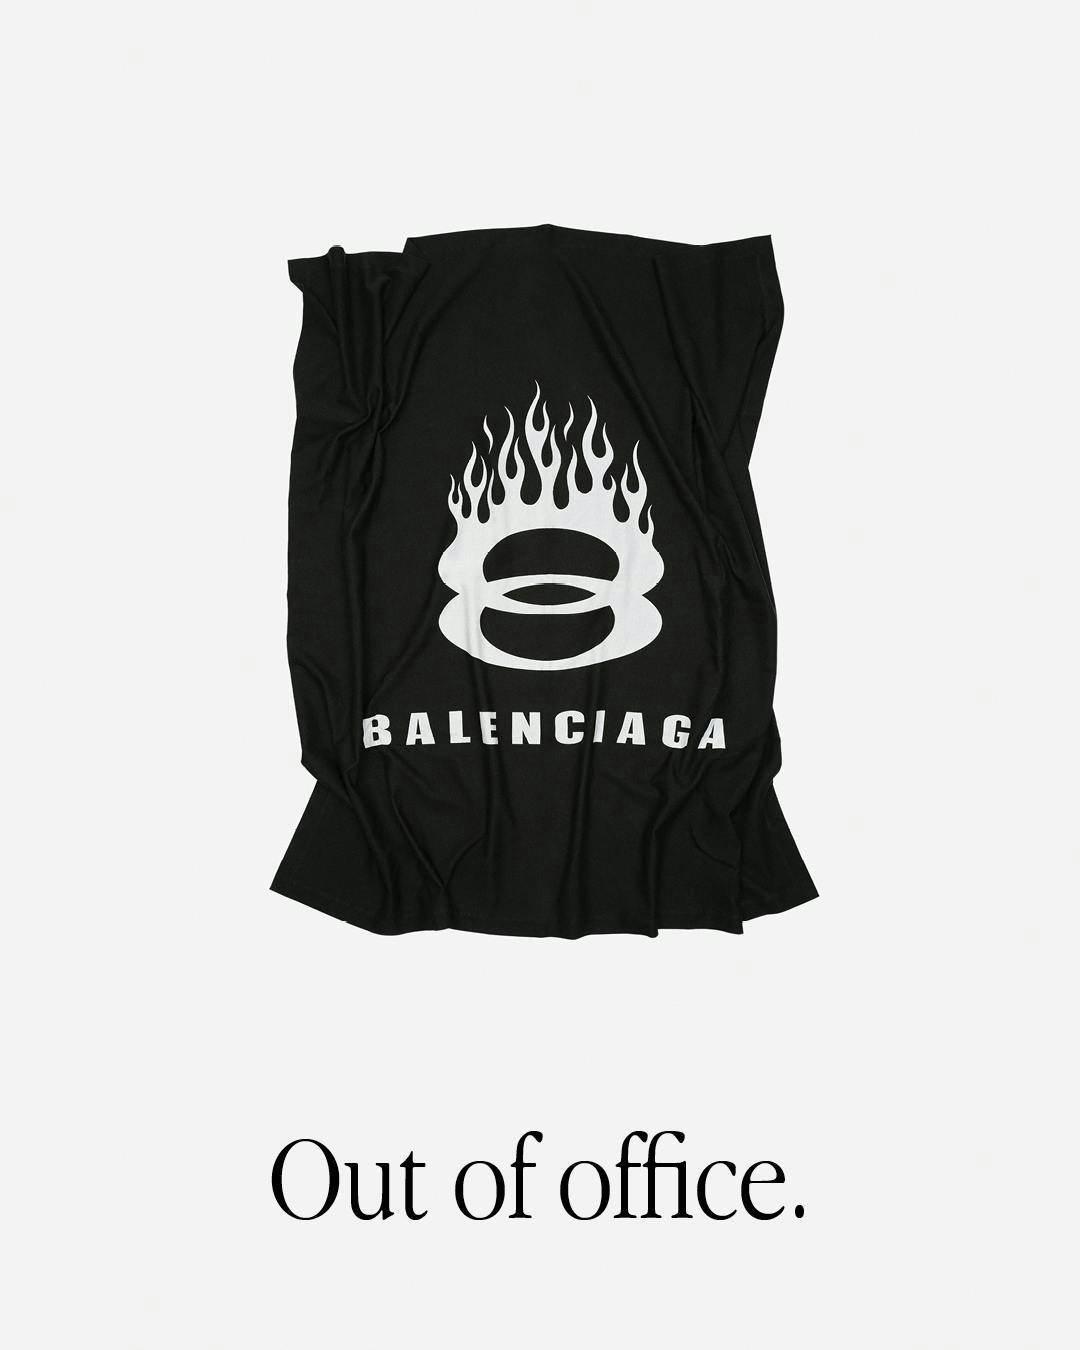 Balenciaga ra mắt dòng sản phẩm quà lưu niệm mùa hè và đồ dùng thời tiết - 6